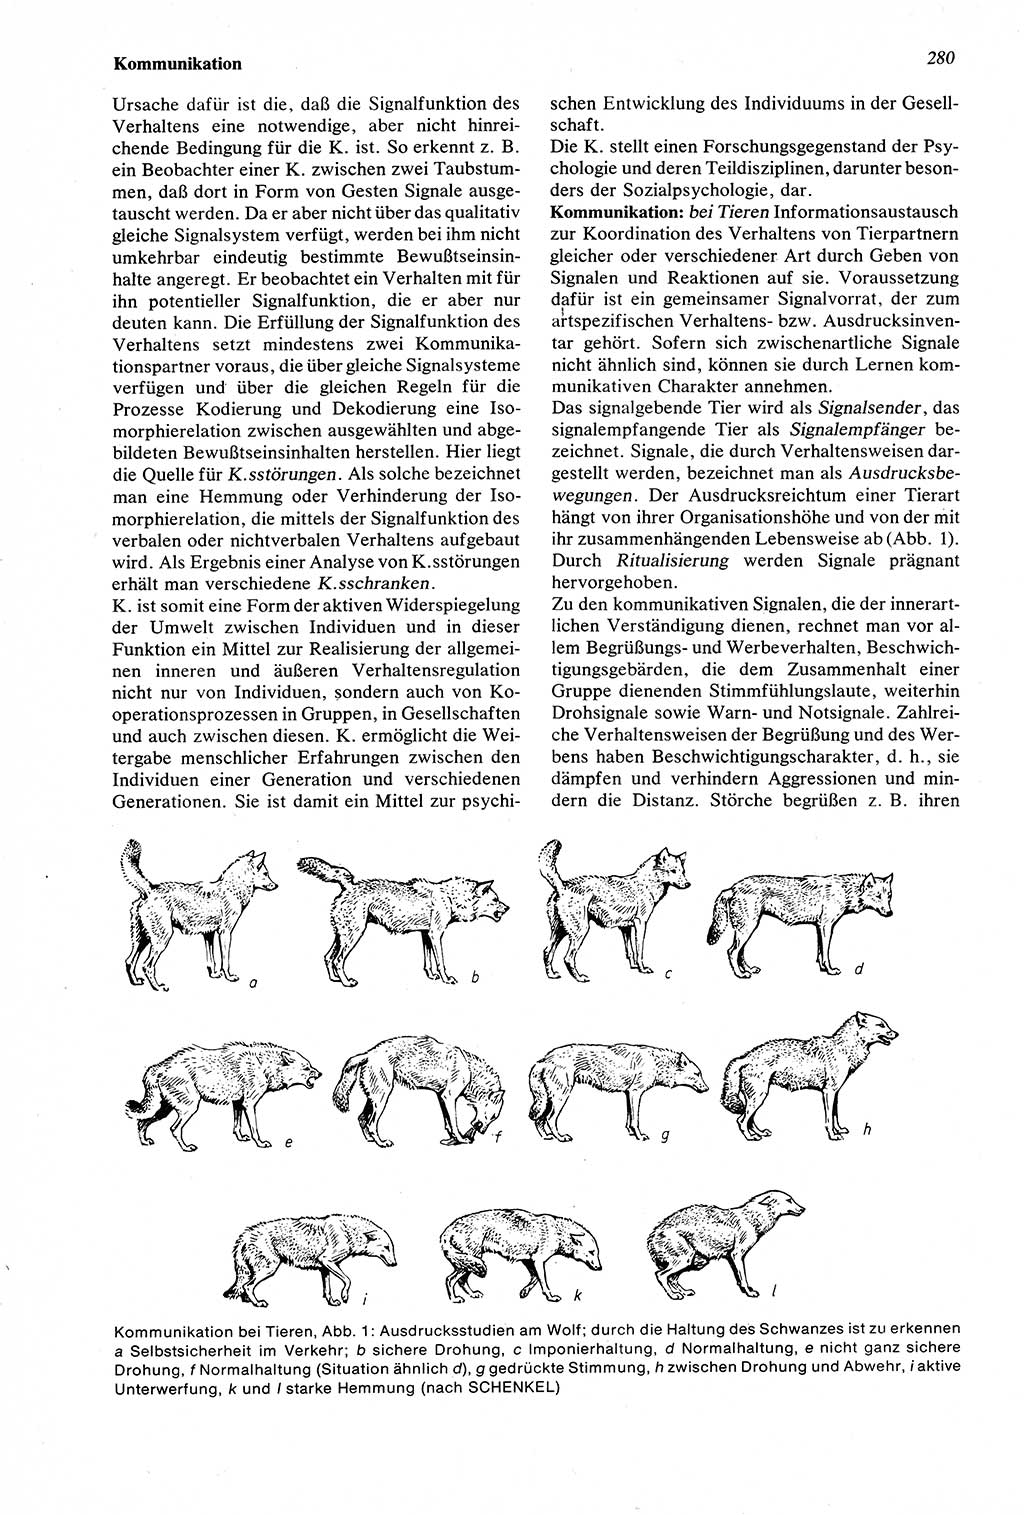 Wörterbuch der Psychologie [Deutsche Demokratische Republik (DDR)] 1976, Seite 280 (Wb. Psych. DDR 1976, S. 280)